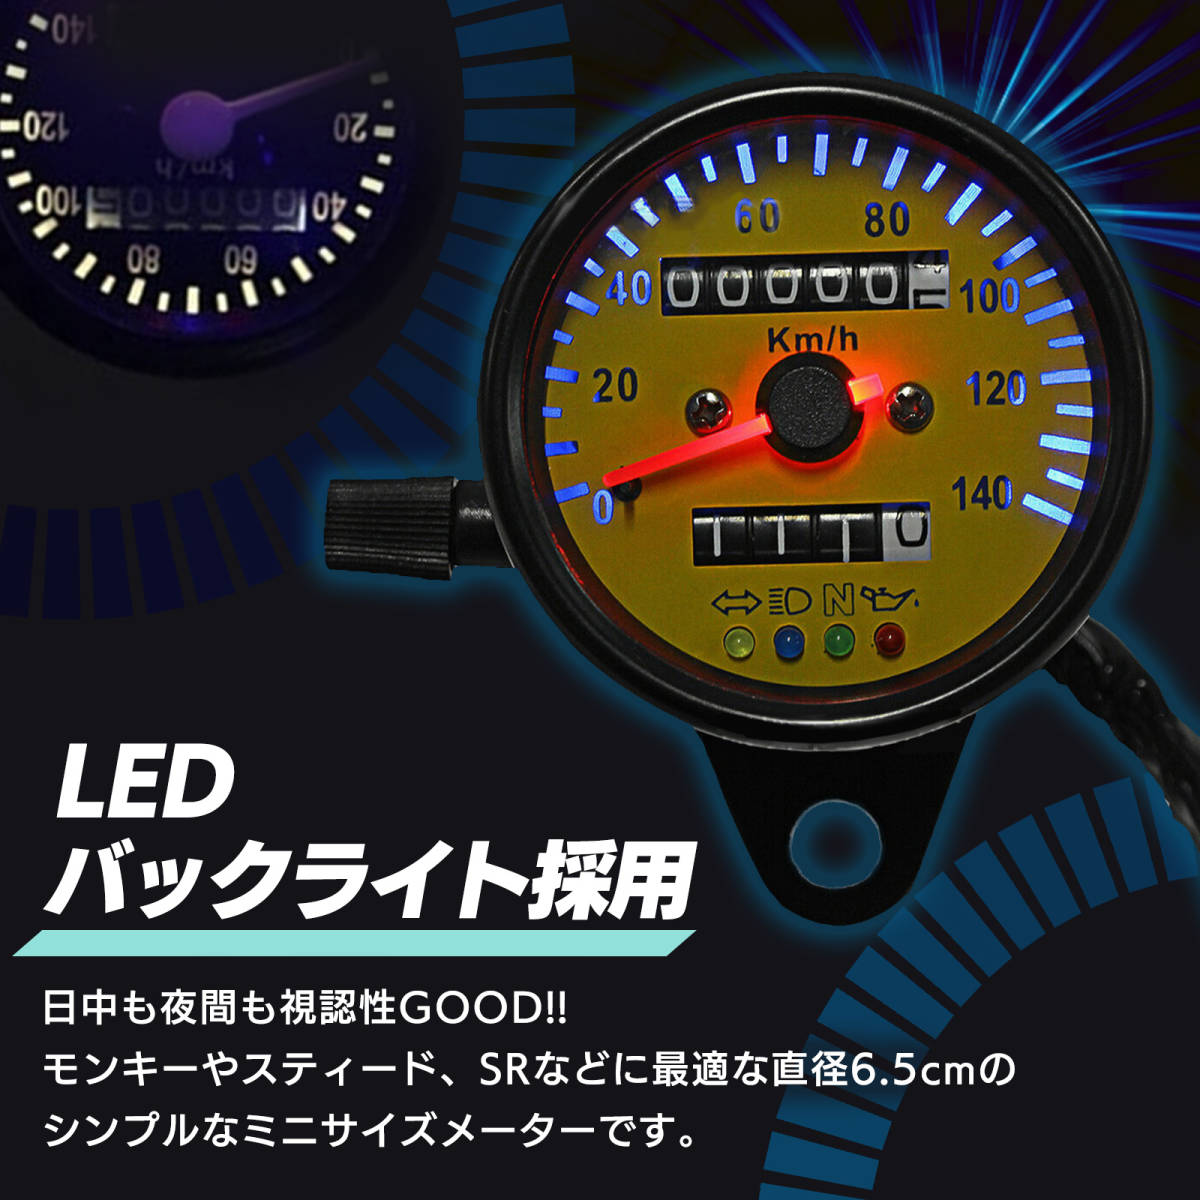 機械式 LED ミニ スピードメーター 140km ブラック イエロー バイク 12V メーター インジケーター 付 140km/h 走行距離_画像2